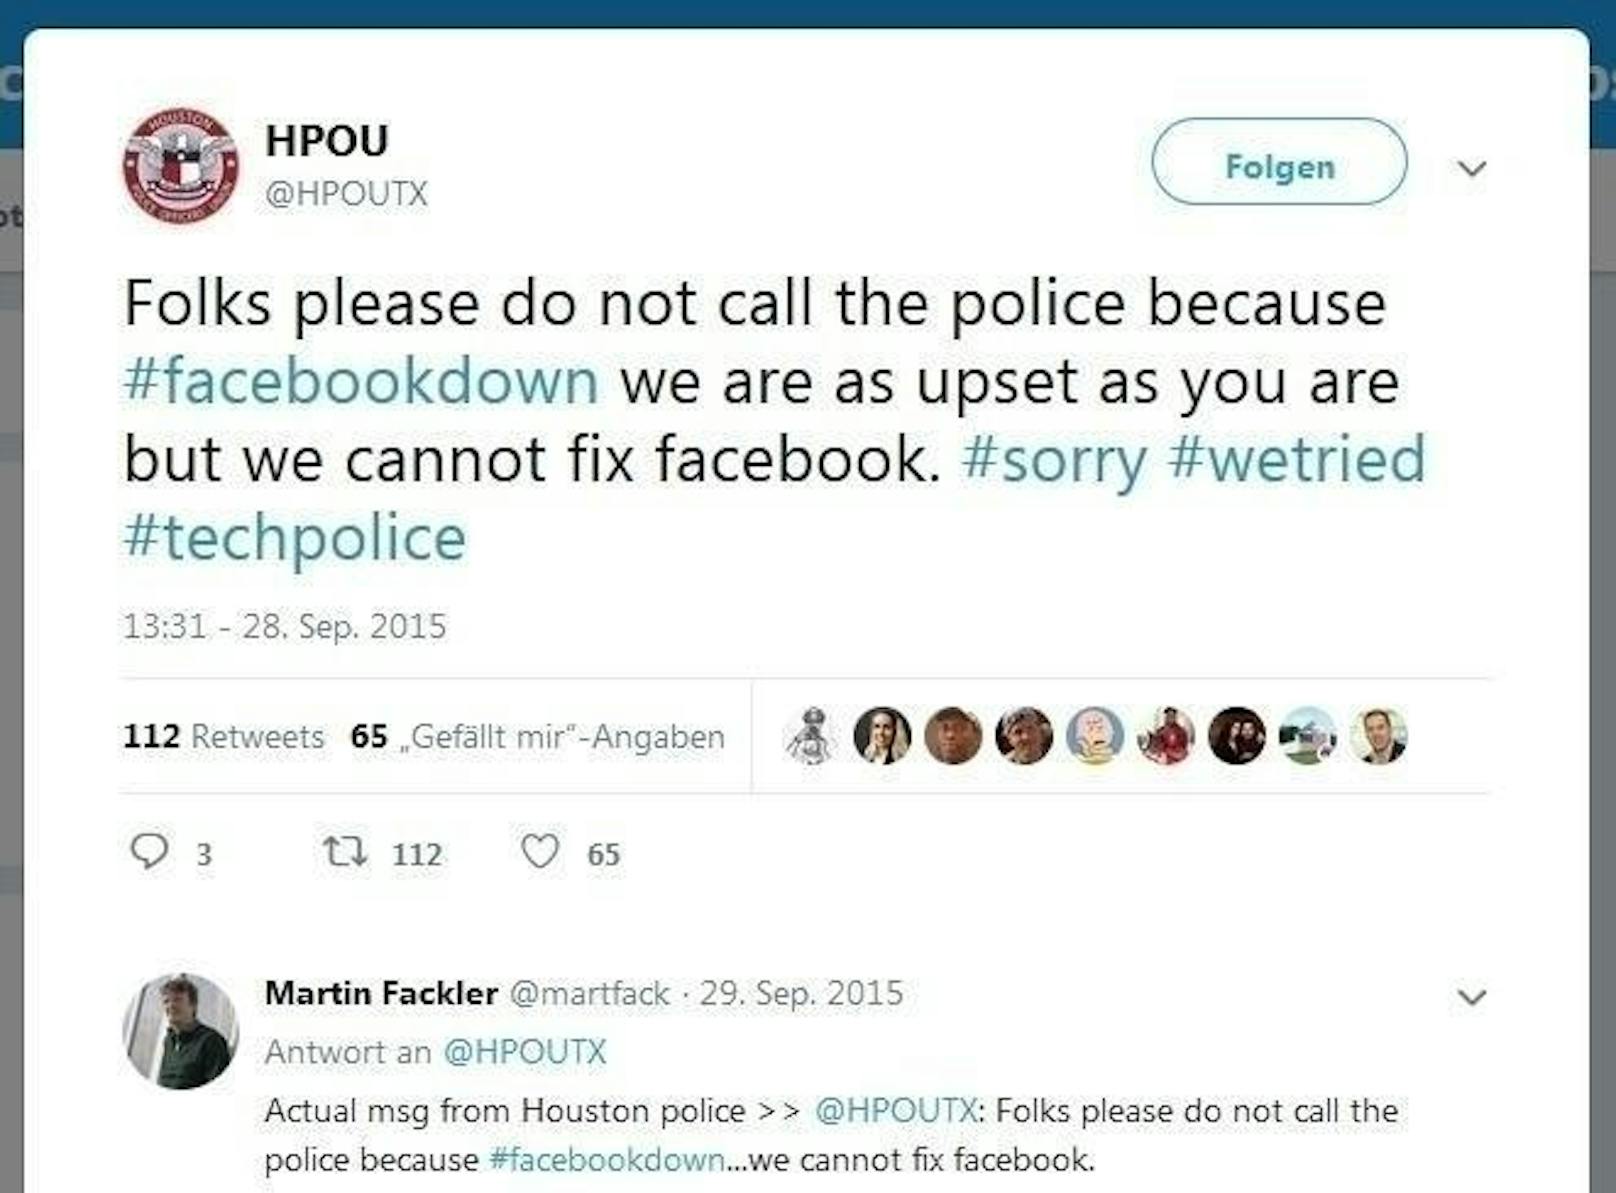 Die Union der Polizisten von Houston im US-Bundesstaat Texas musste auch schon Ähnliches auf Twitter schreiben: "Leute, bitte ruft nicht die Polizei an, weil Facebook nicht funktioniert. Wir sind genau so wütend wie ihr, aber wir können Facebook nicht reparieren."